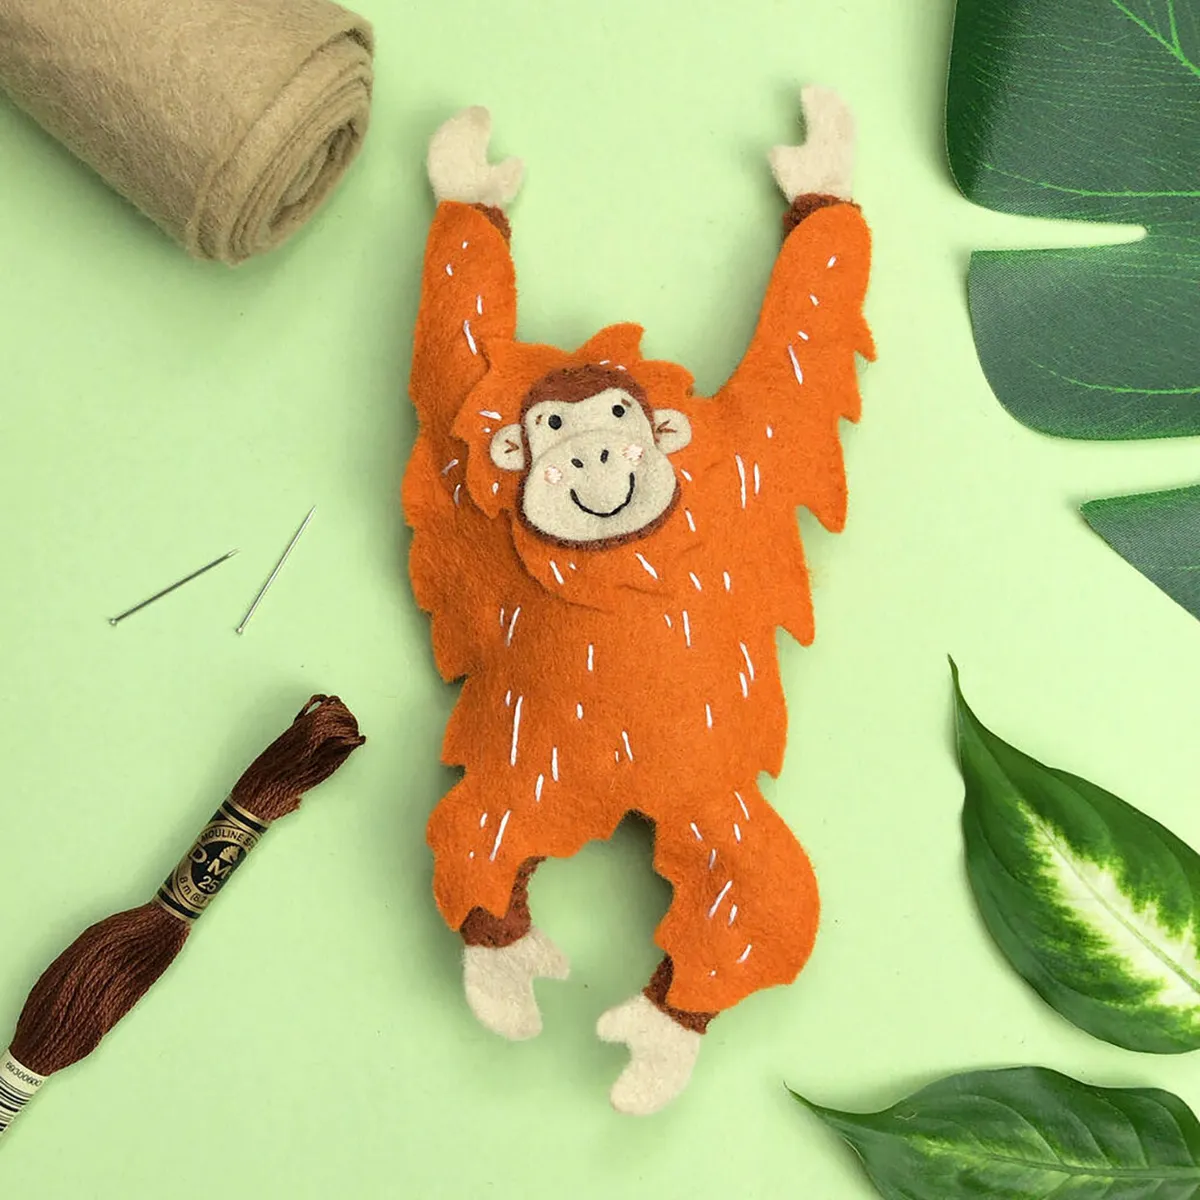 Animal patterns – orangutan toy